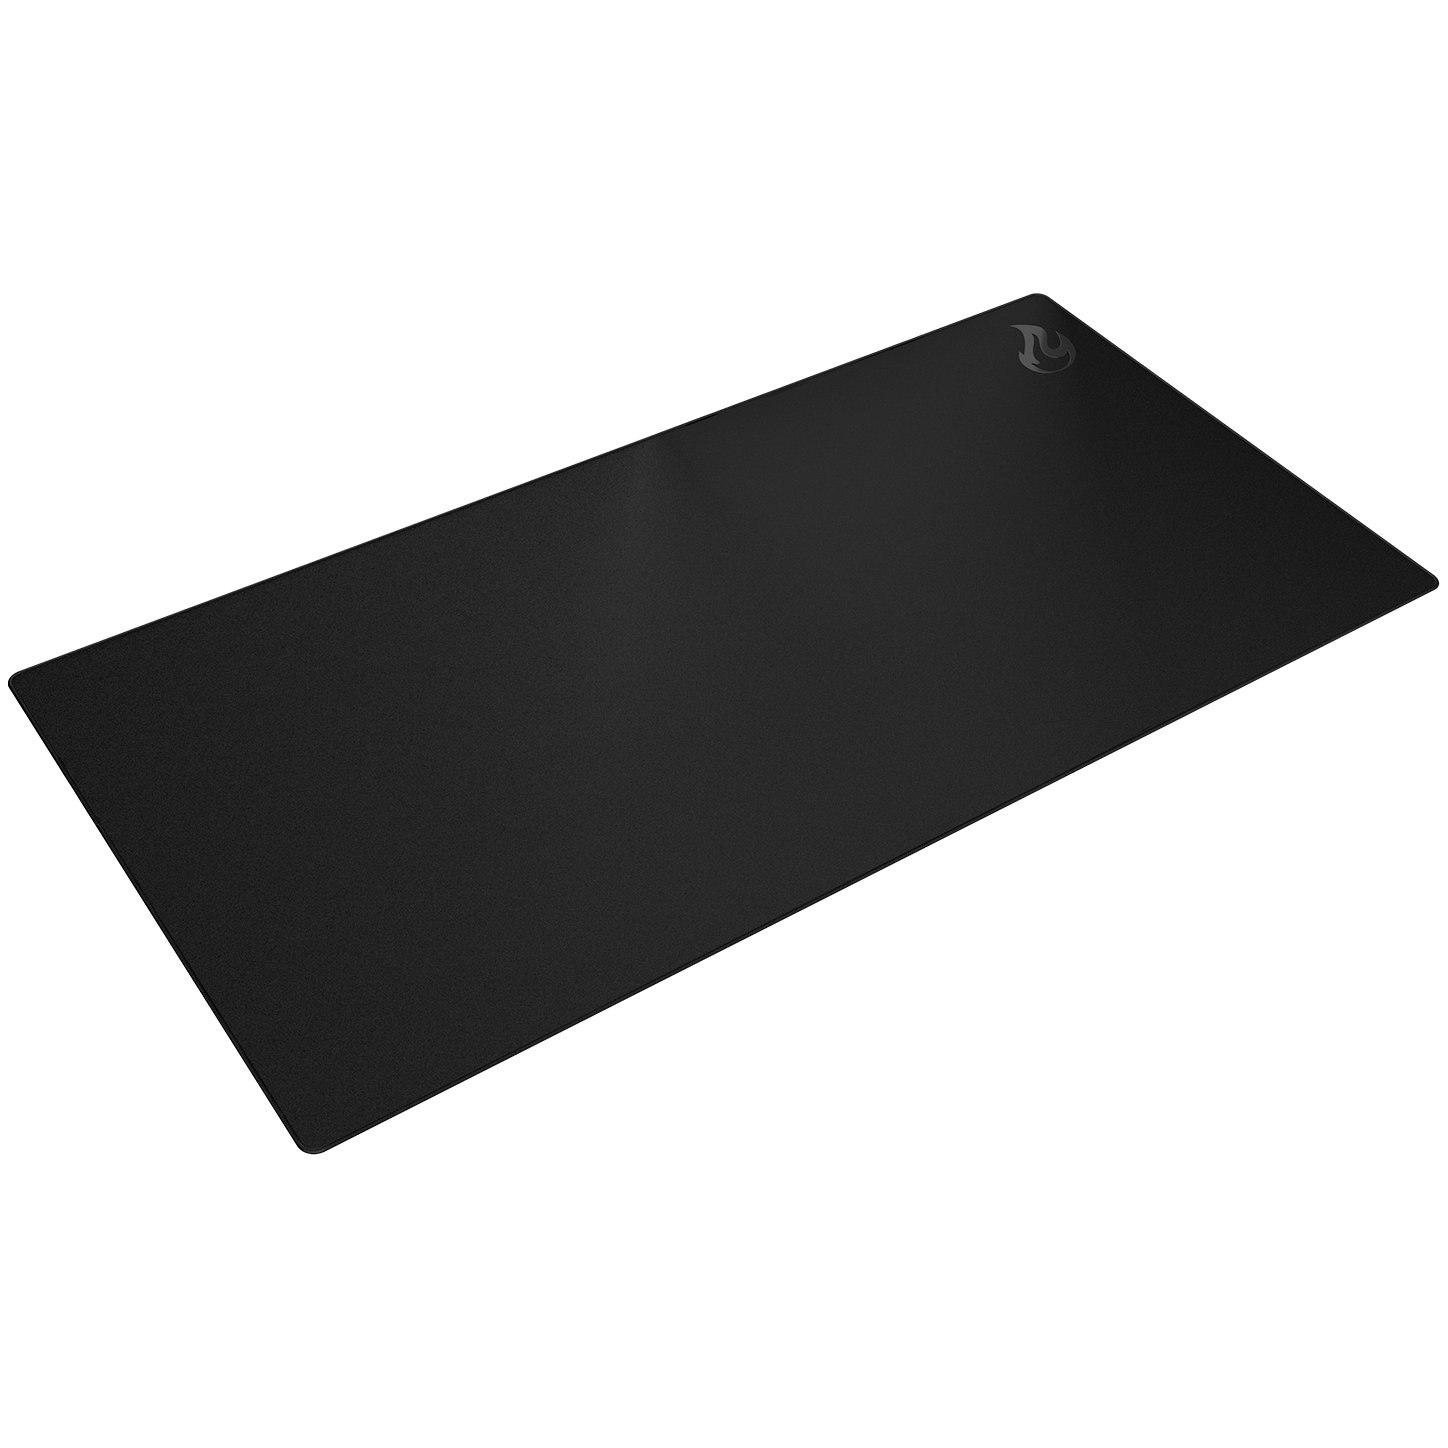 Deskmat DM16, 1600x800mm - schwarz